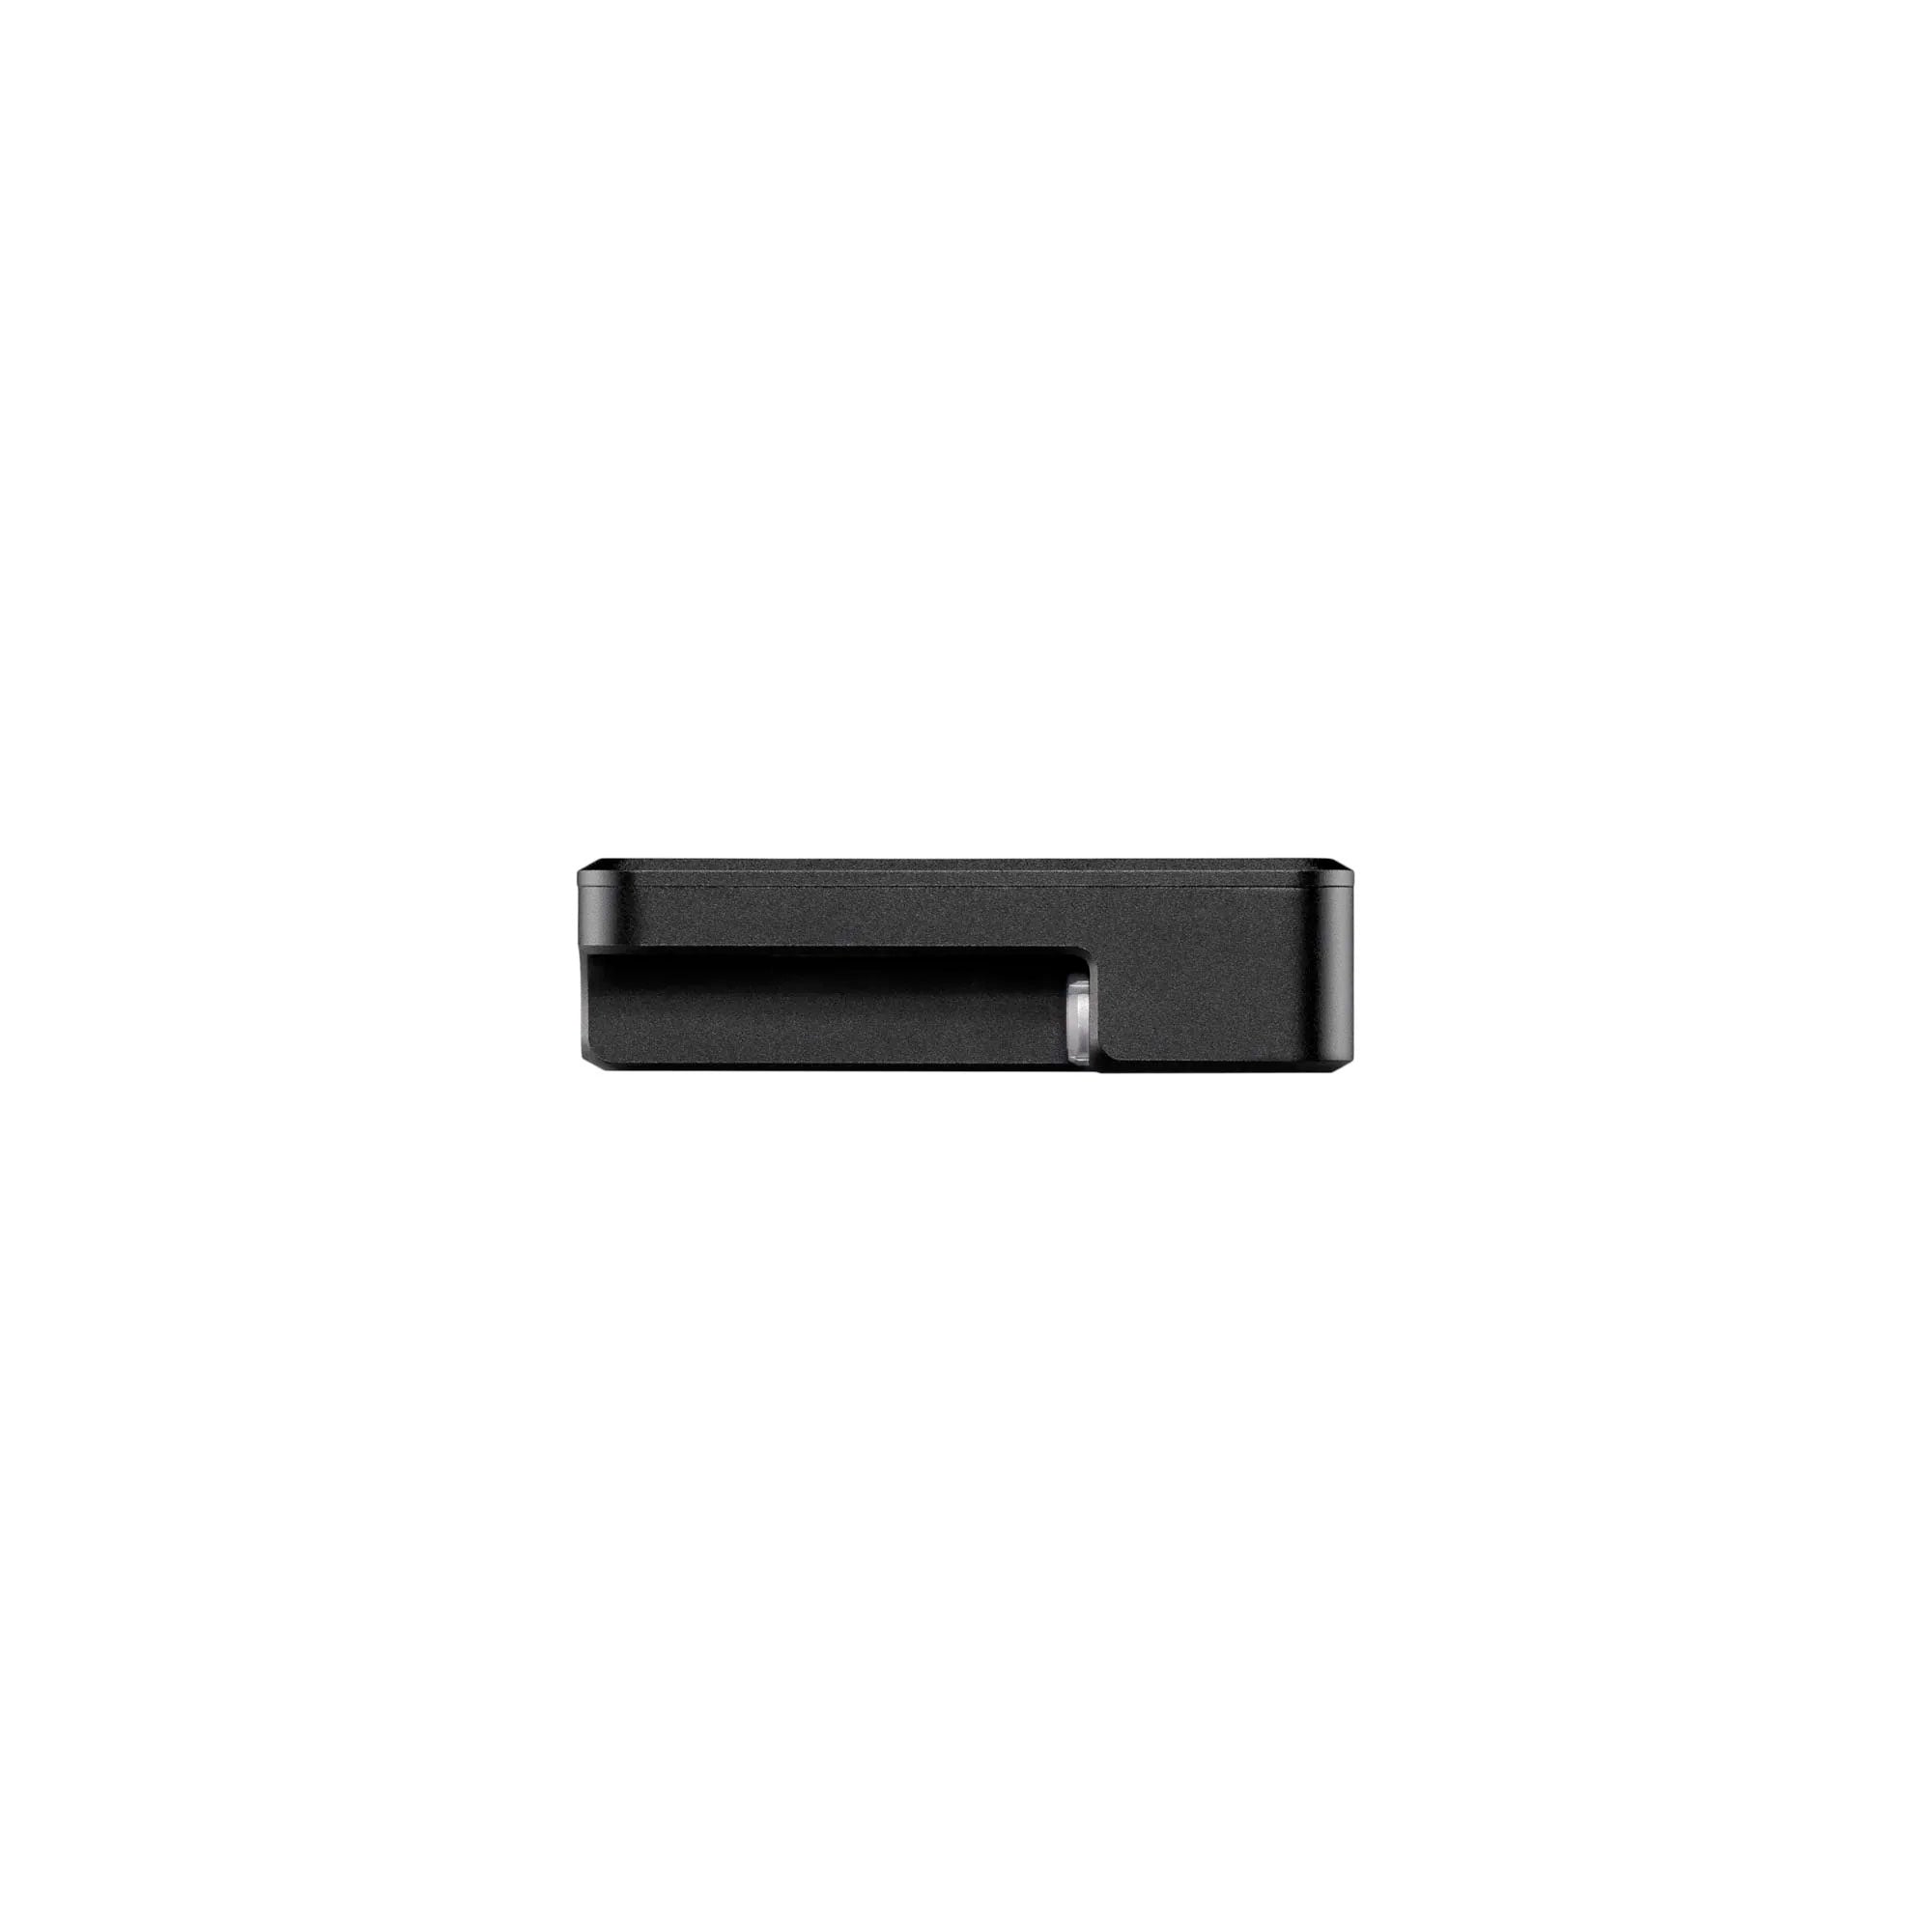 Teradek Node 5G-Q Series Global Modem - USB A